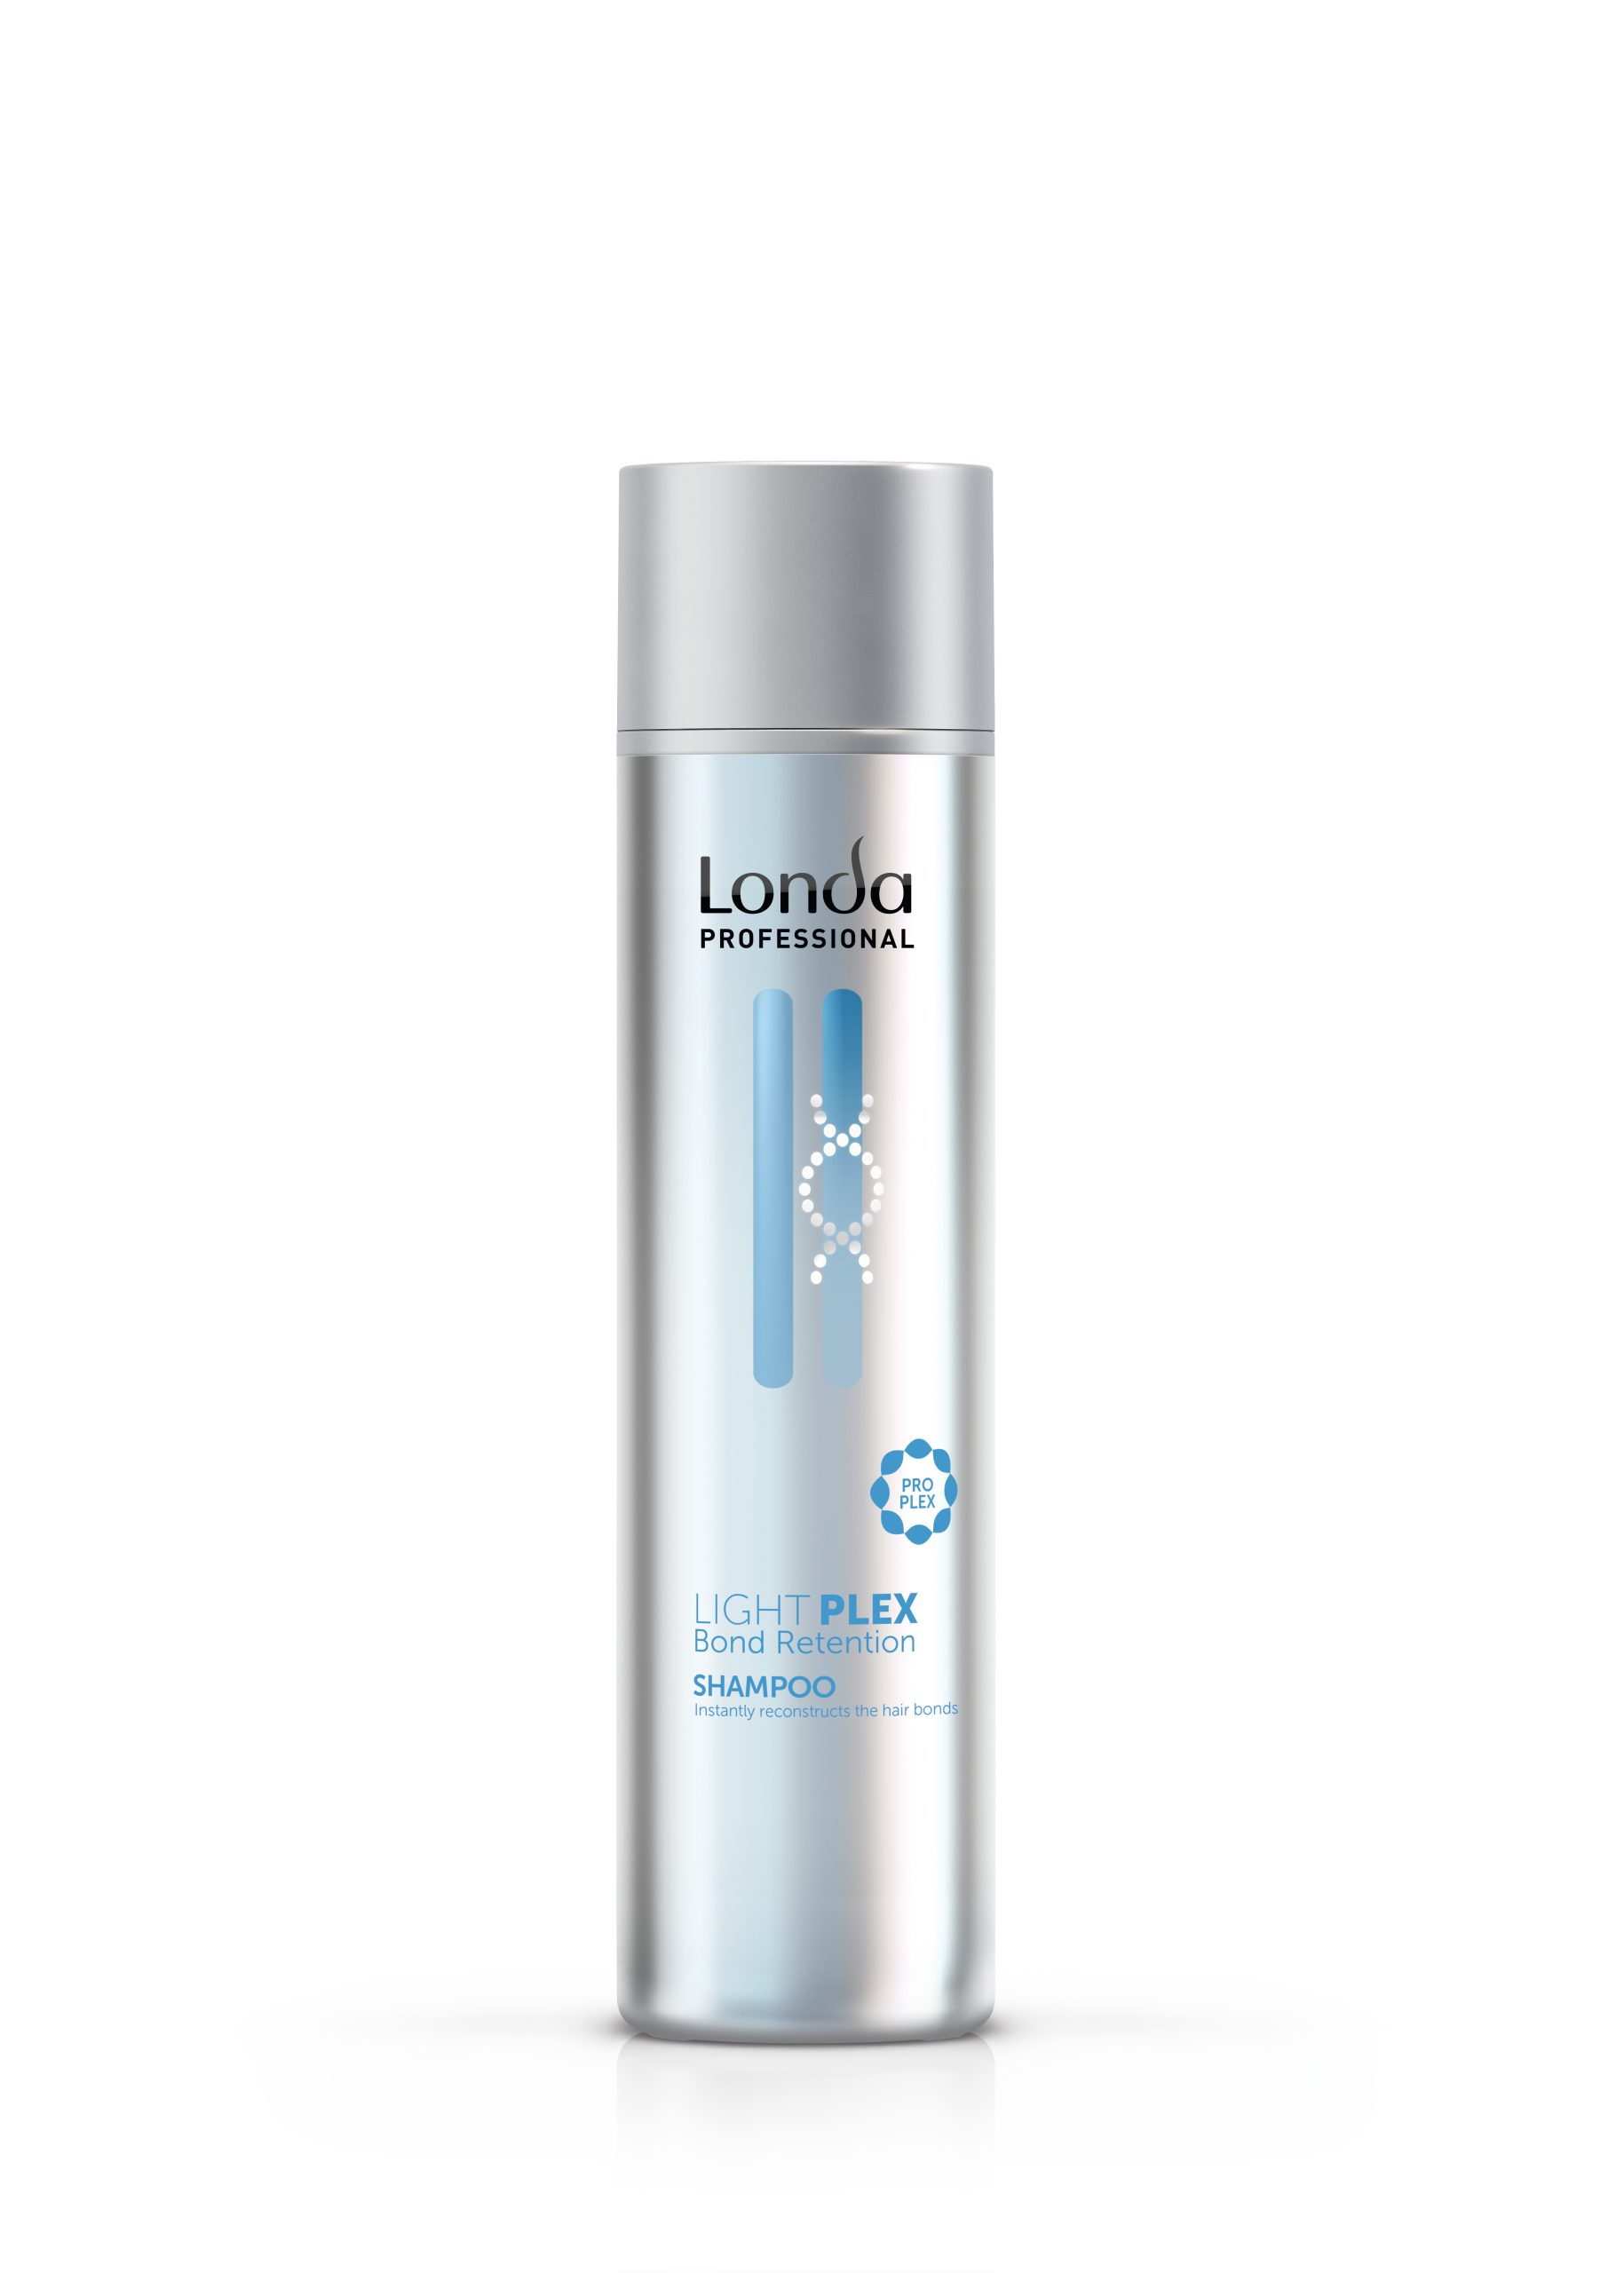 Șampon Lightplex Bond Retention de la Londa Professional